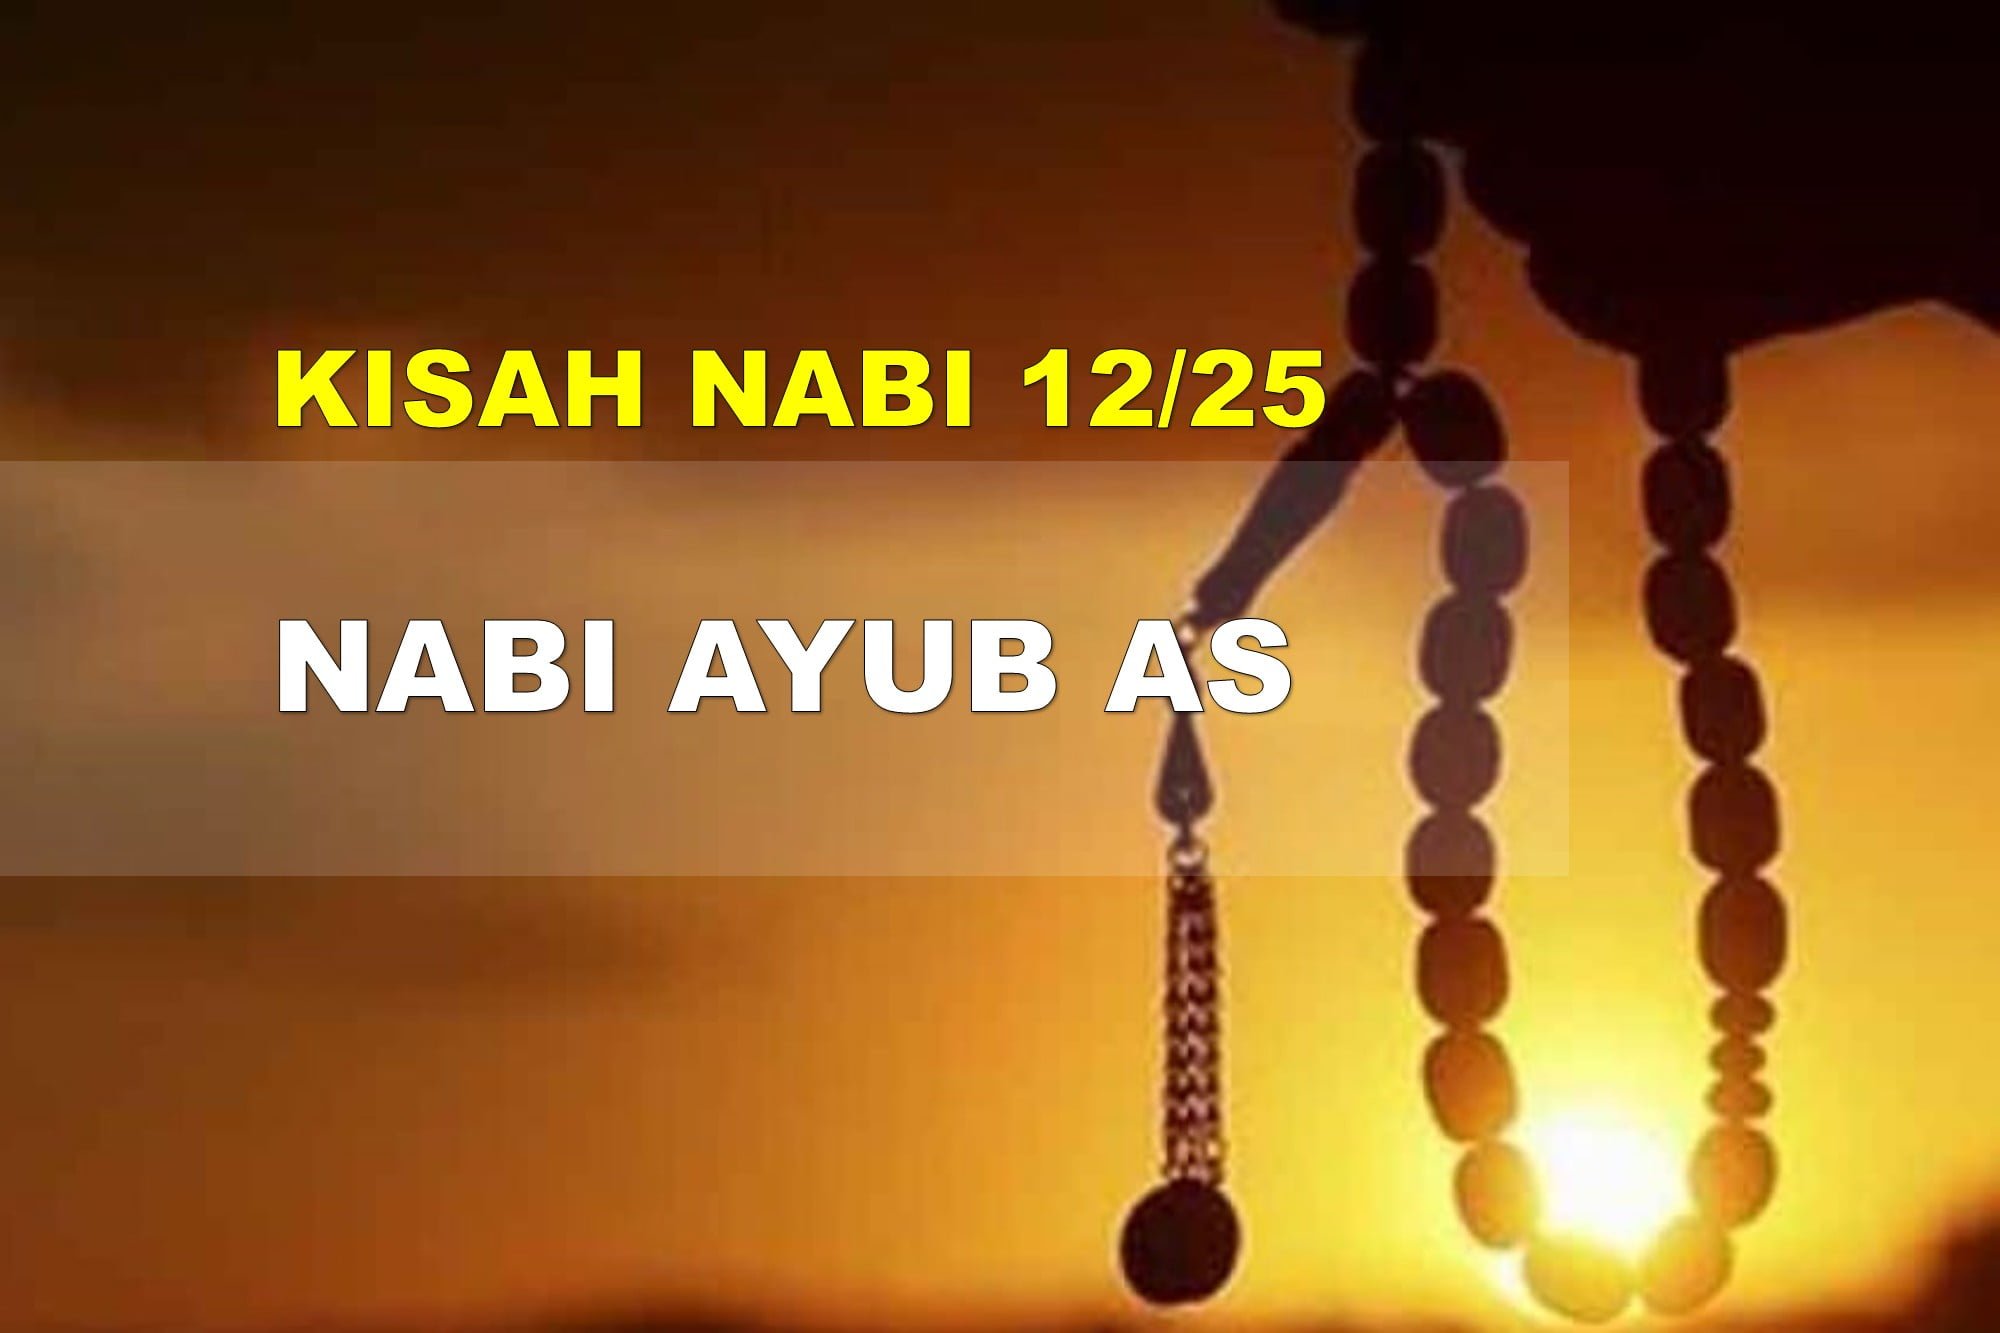 Kisah Nabi Part 1225 Nabi Ayub AS